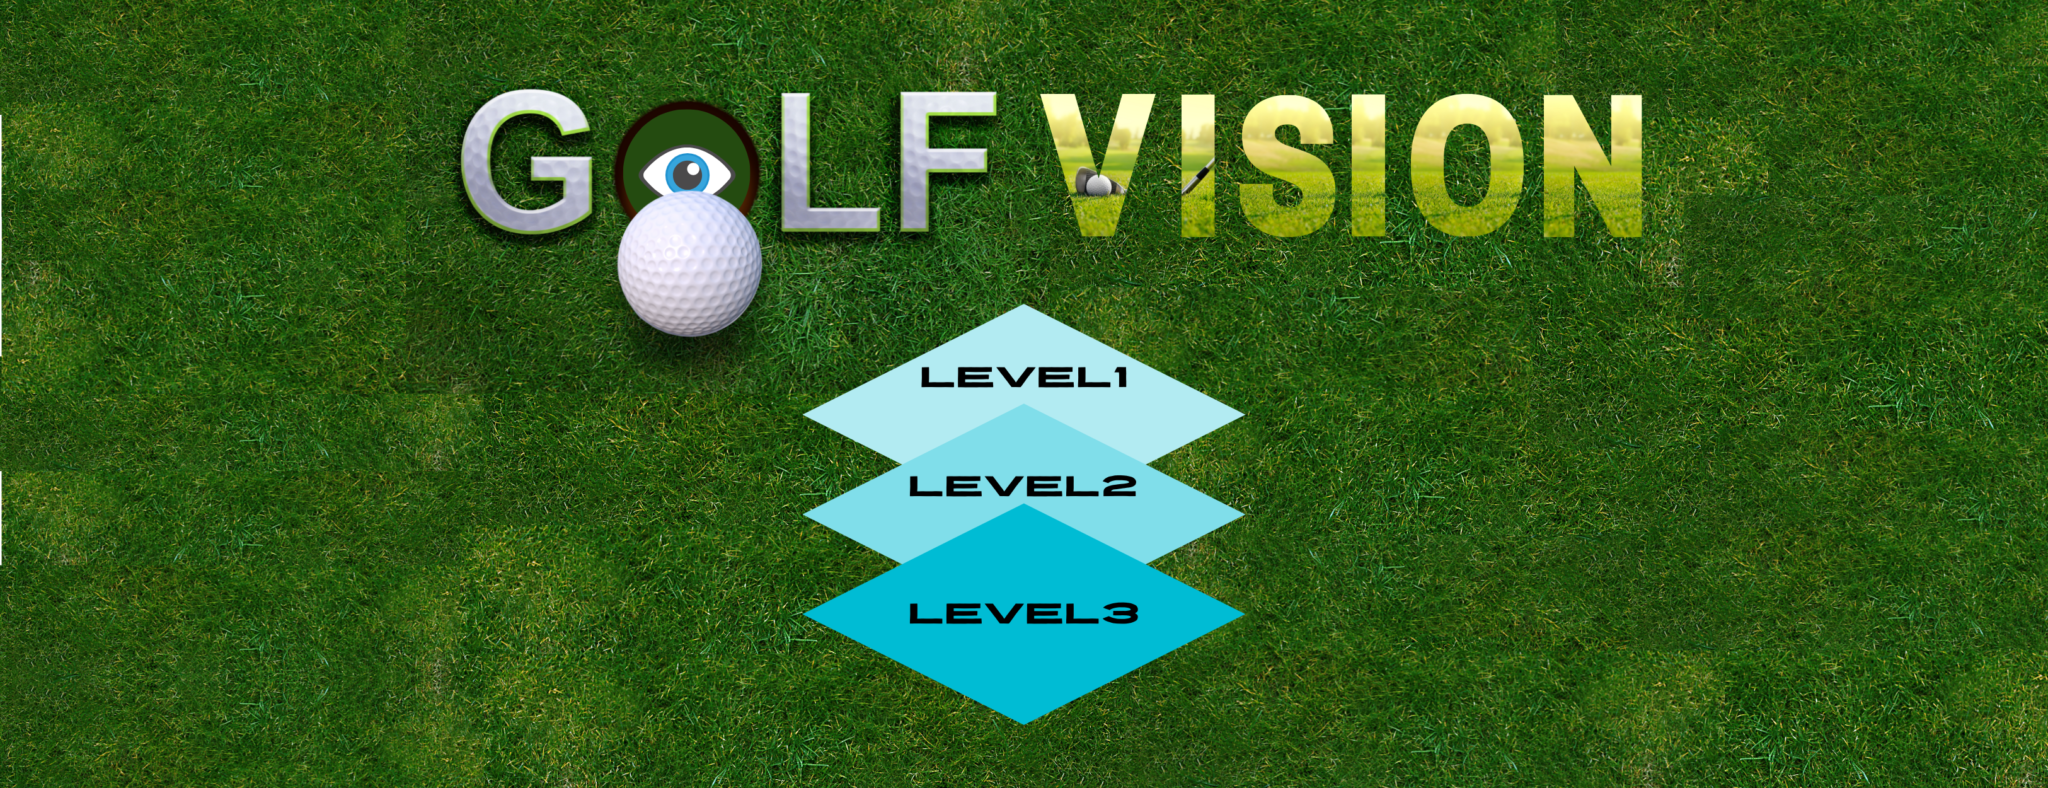 ゴルフスポーツビジョン【Level 1】